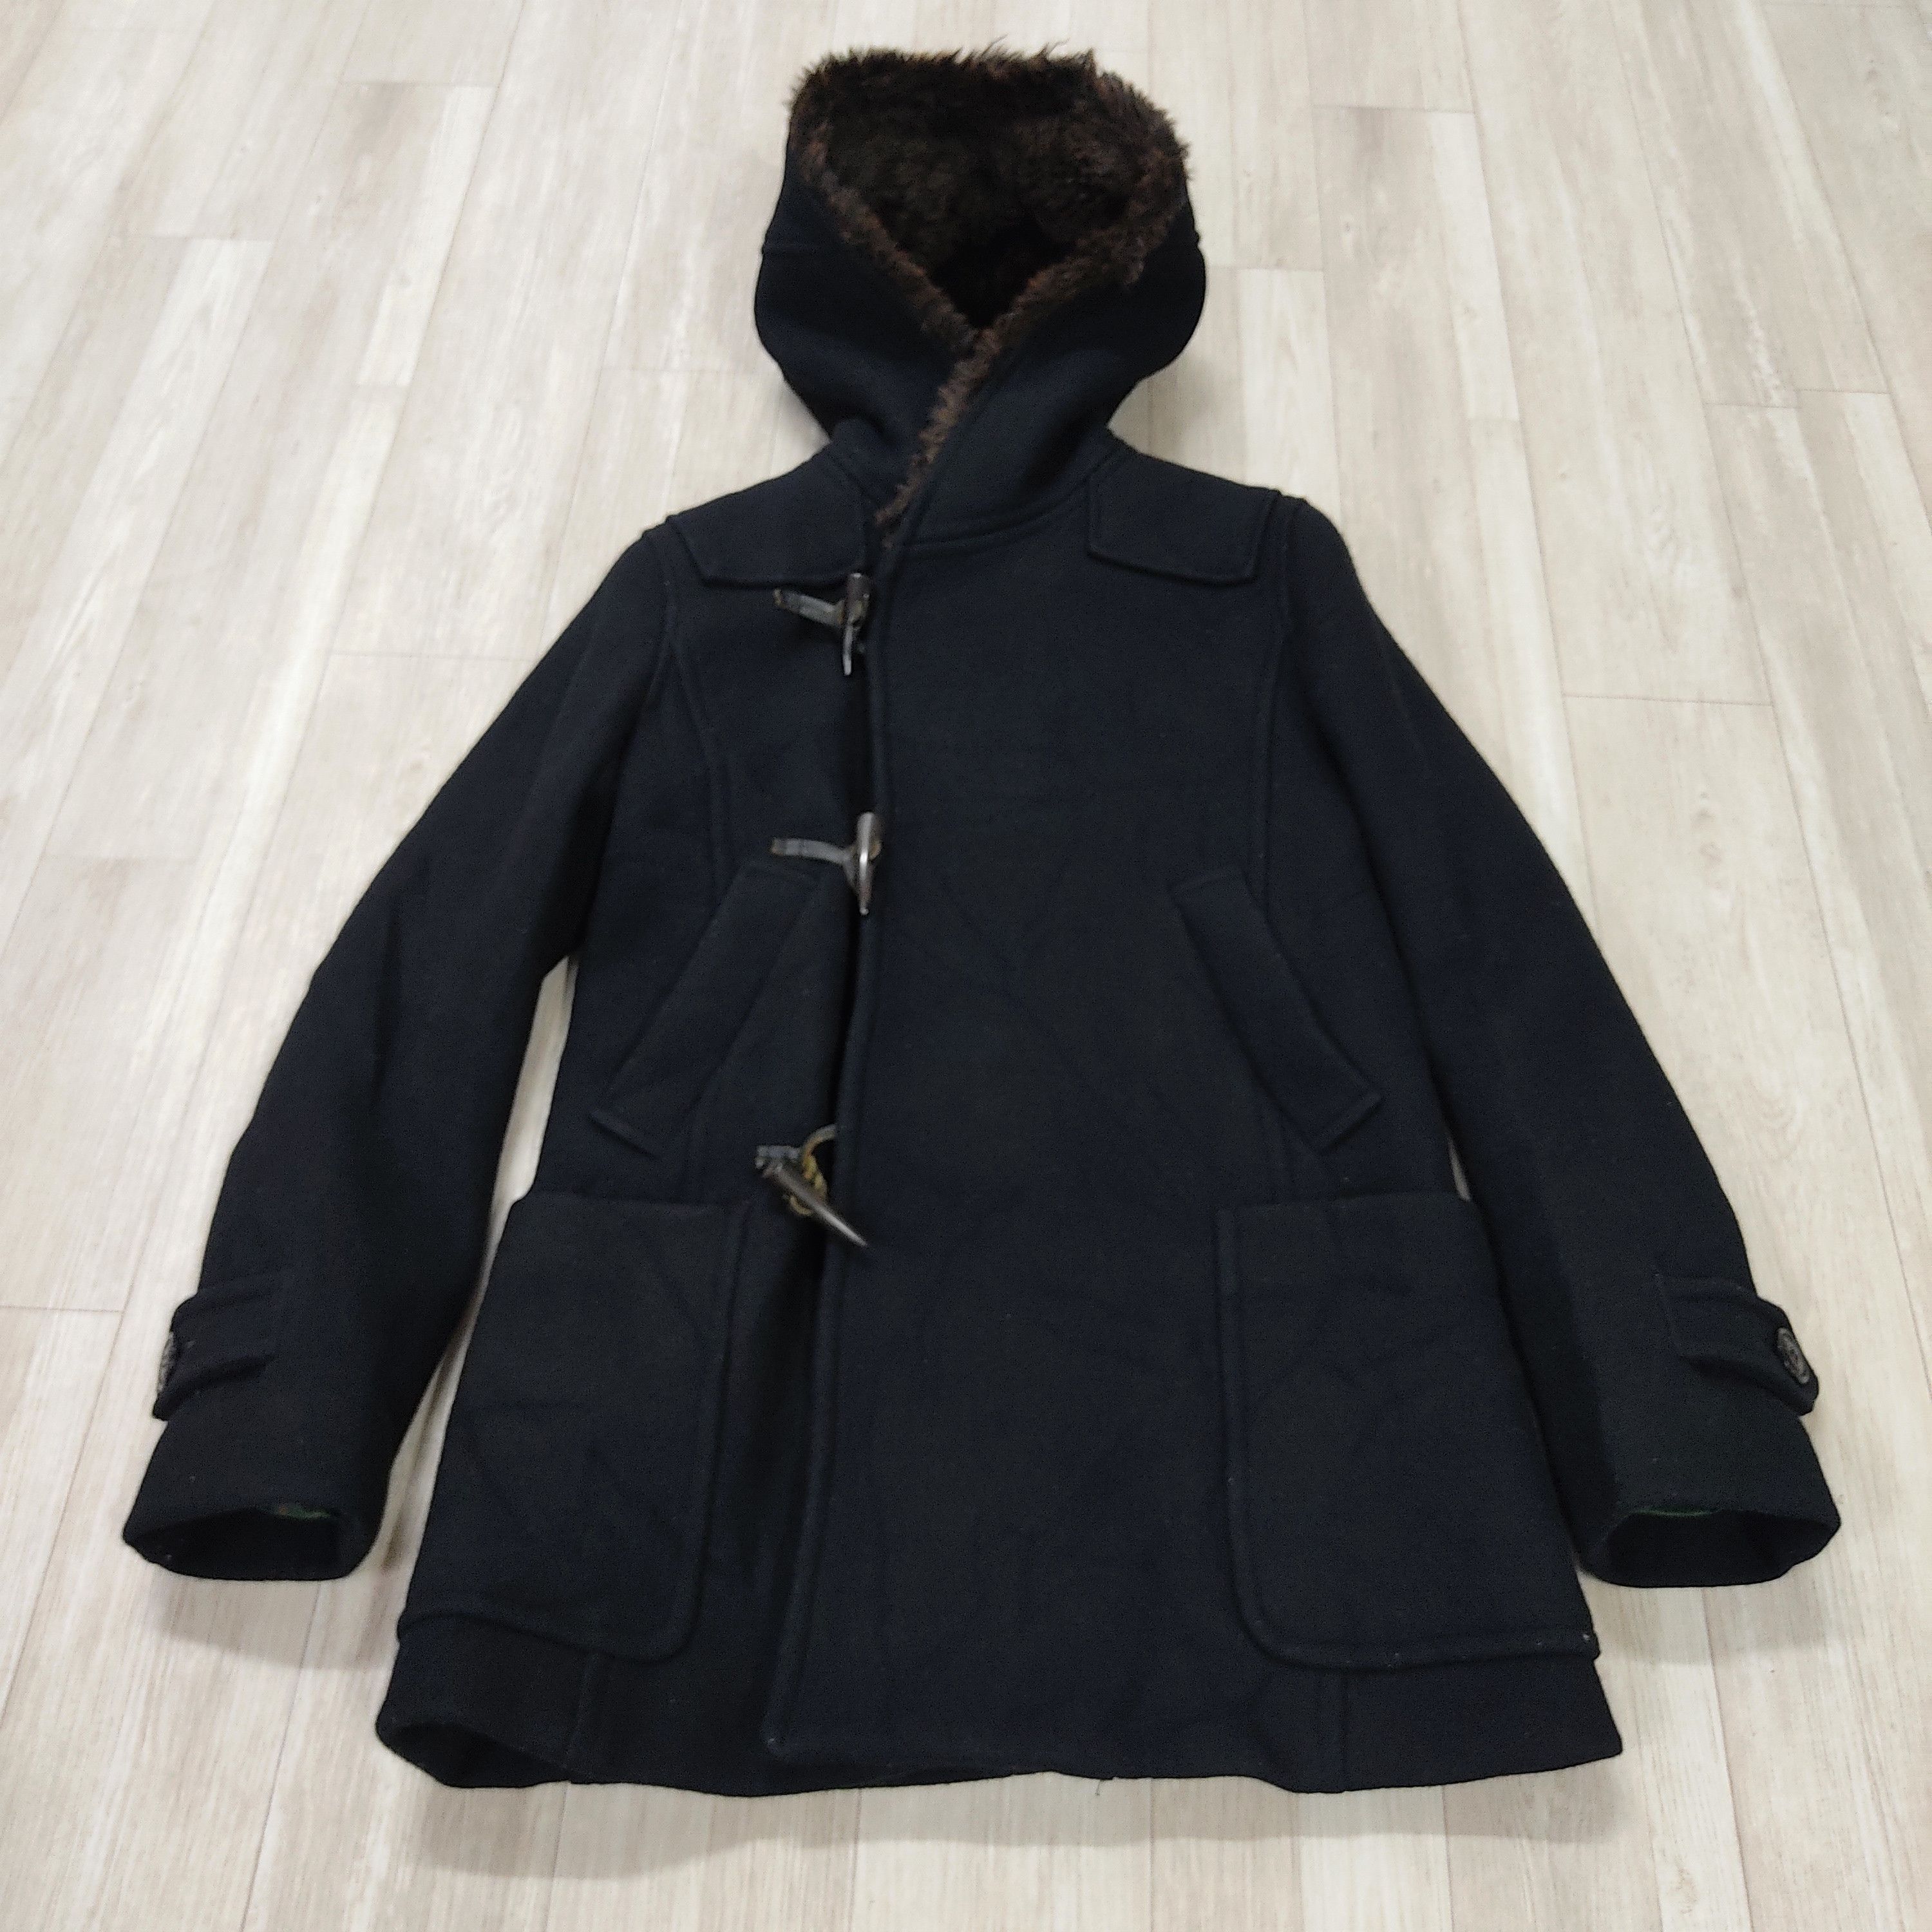 SUNAO KUWAHARA Fur Hooded Wool Duffle Jacket - 5